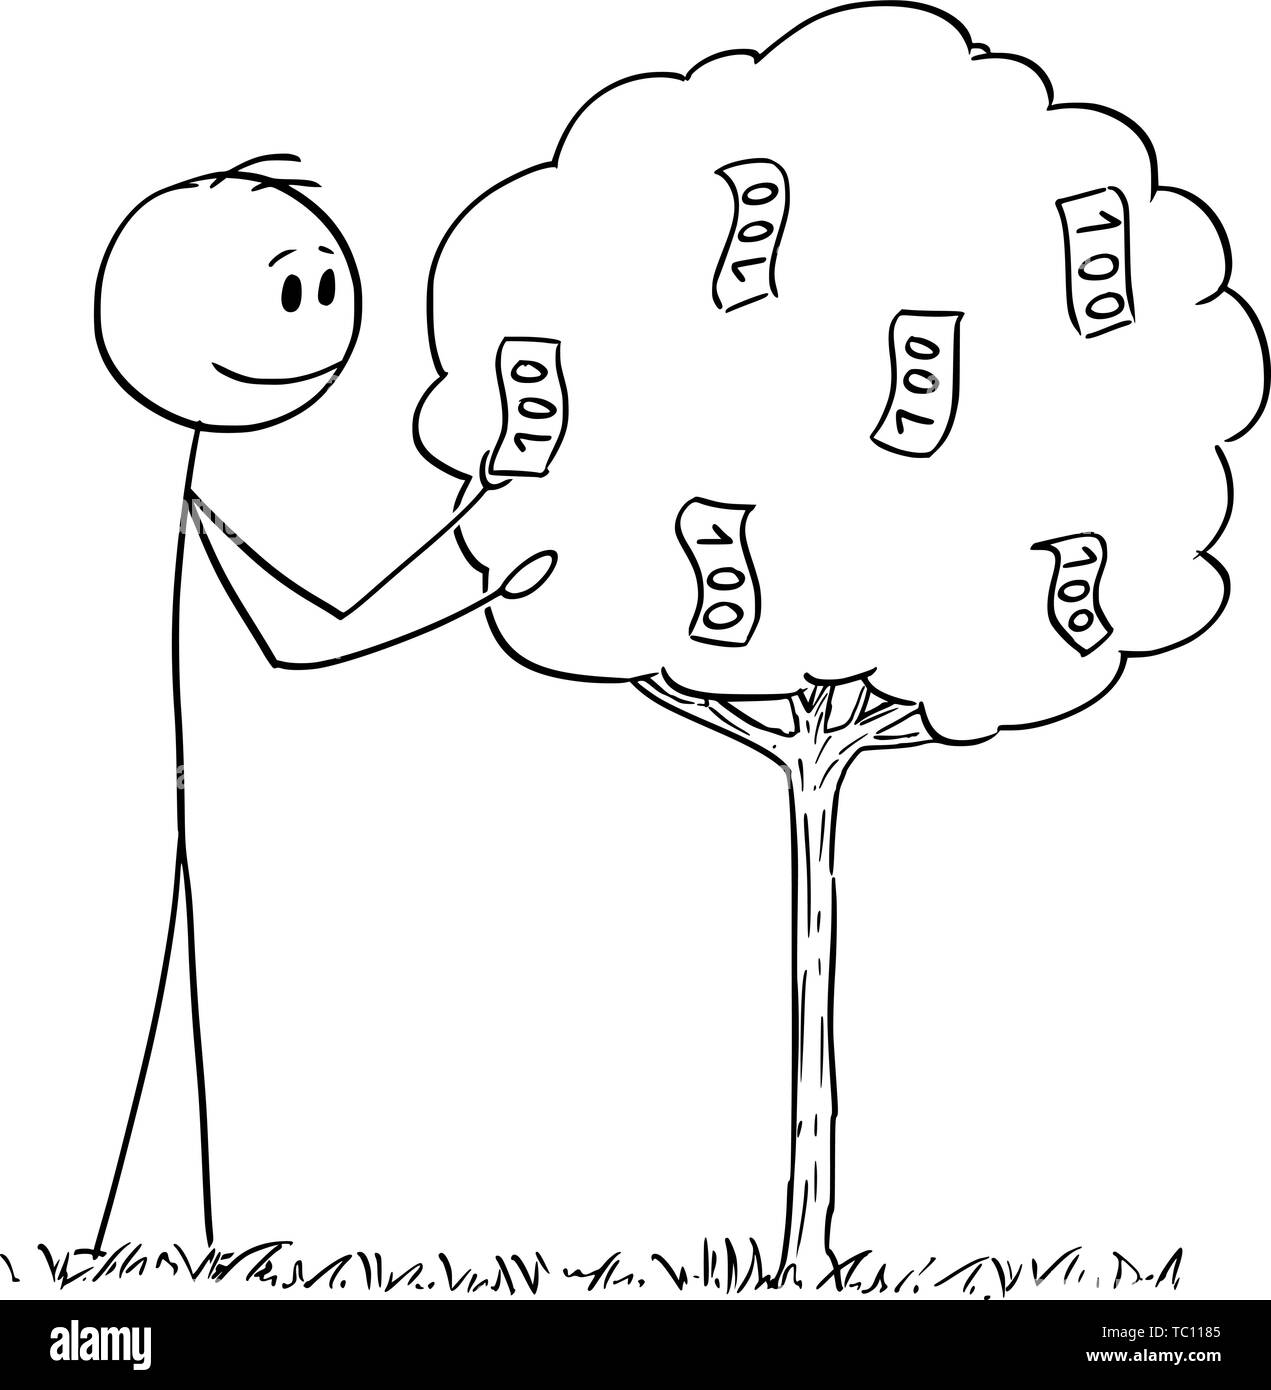 Vector cartoon stick figura disegno illustrazione concettuale dell'uomo o imprenditore il prelievo o la raccolta di fatture, banconote, denaro o contanti cresce sugli alberi da frutta. Illustrazione Vettoriale